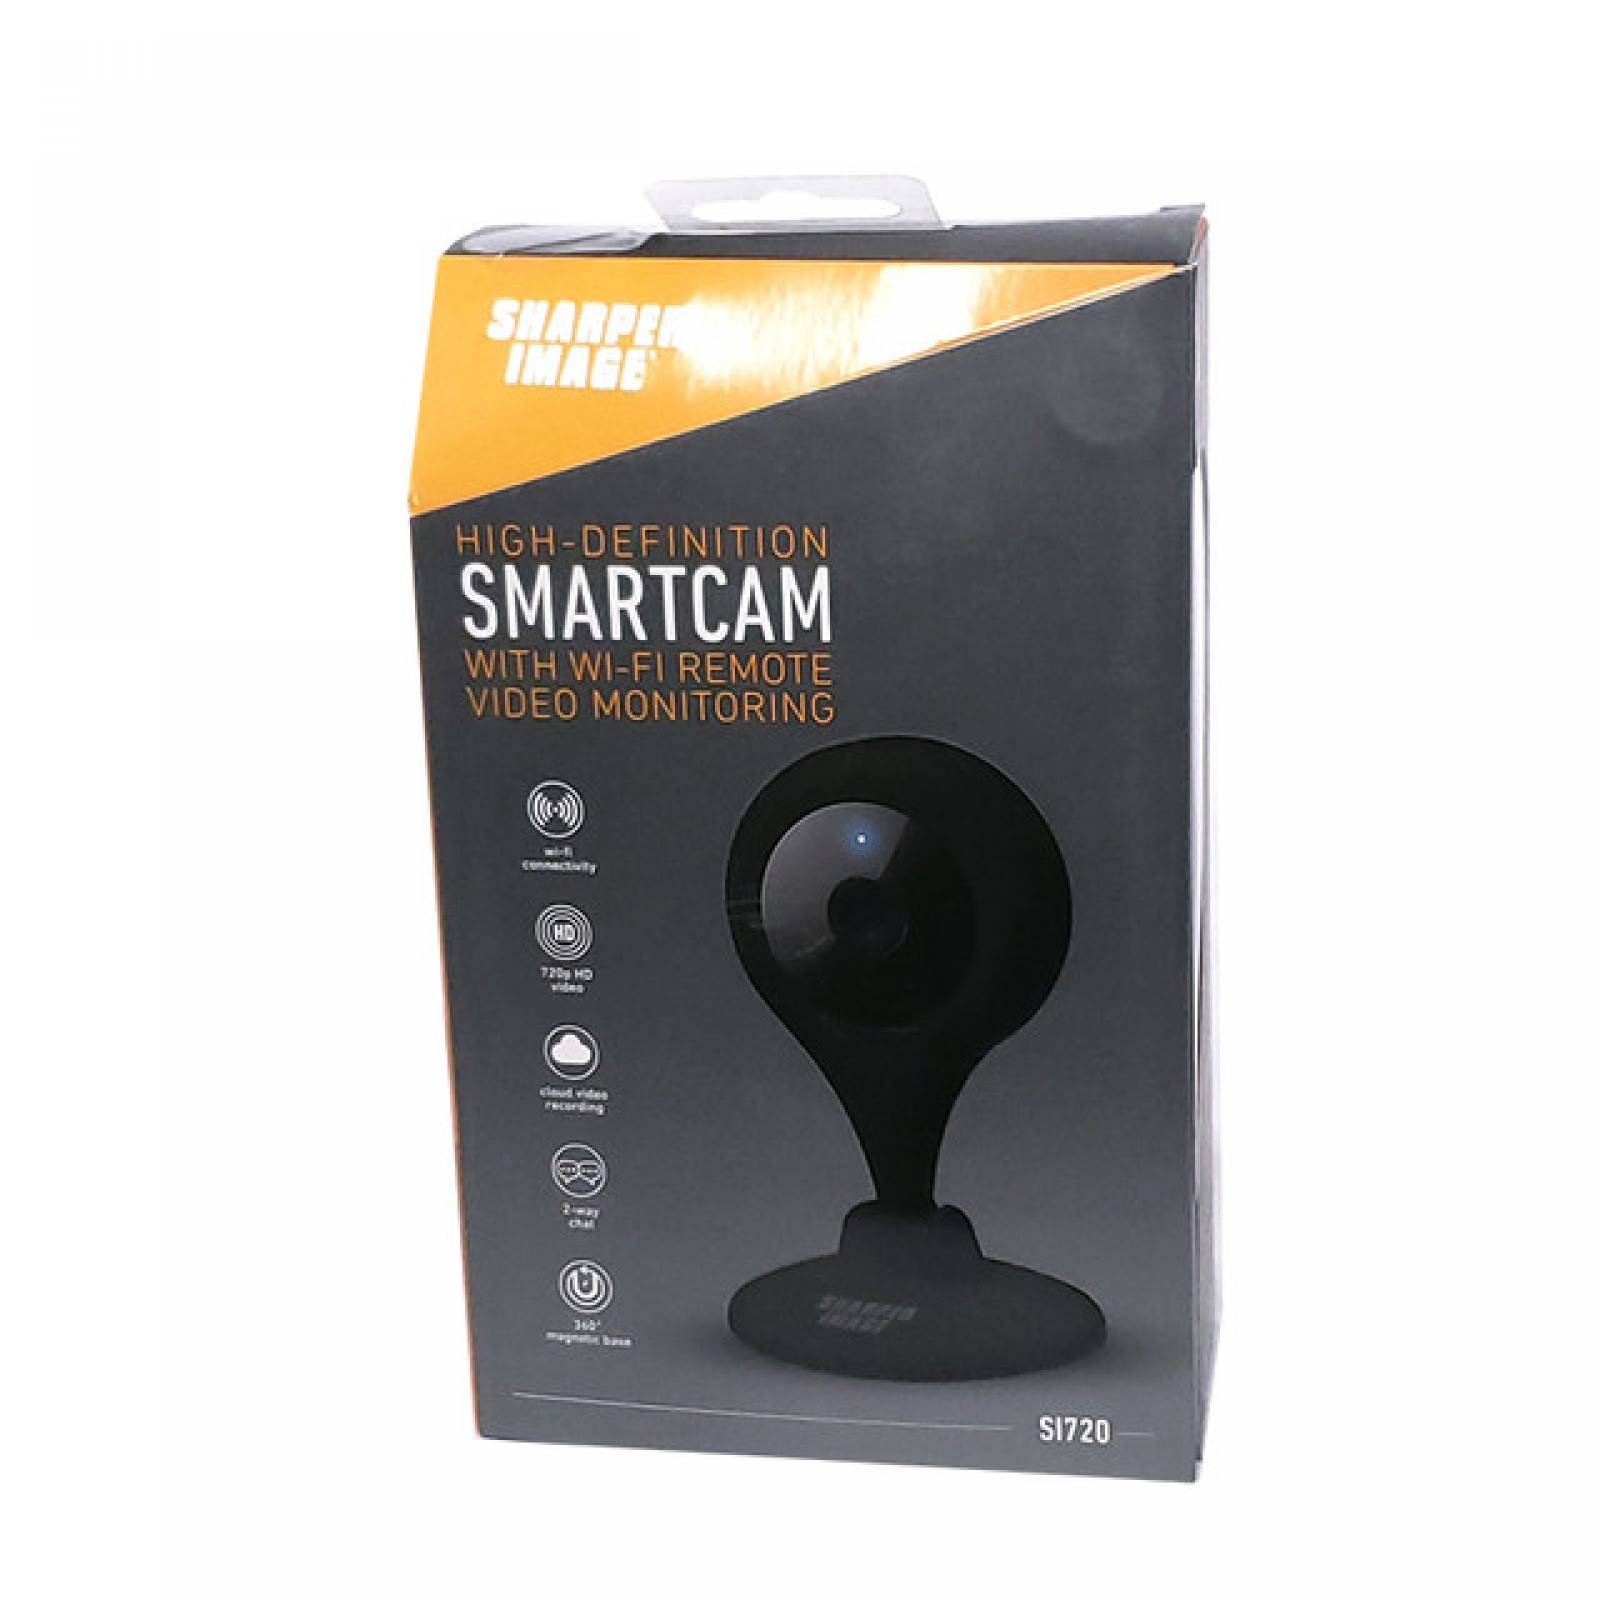 SHARPER IMAGE - Camara Wi-Fi de Seguridad y Vigilacia de Casa HD 720p 360°